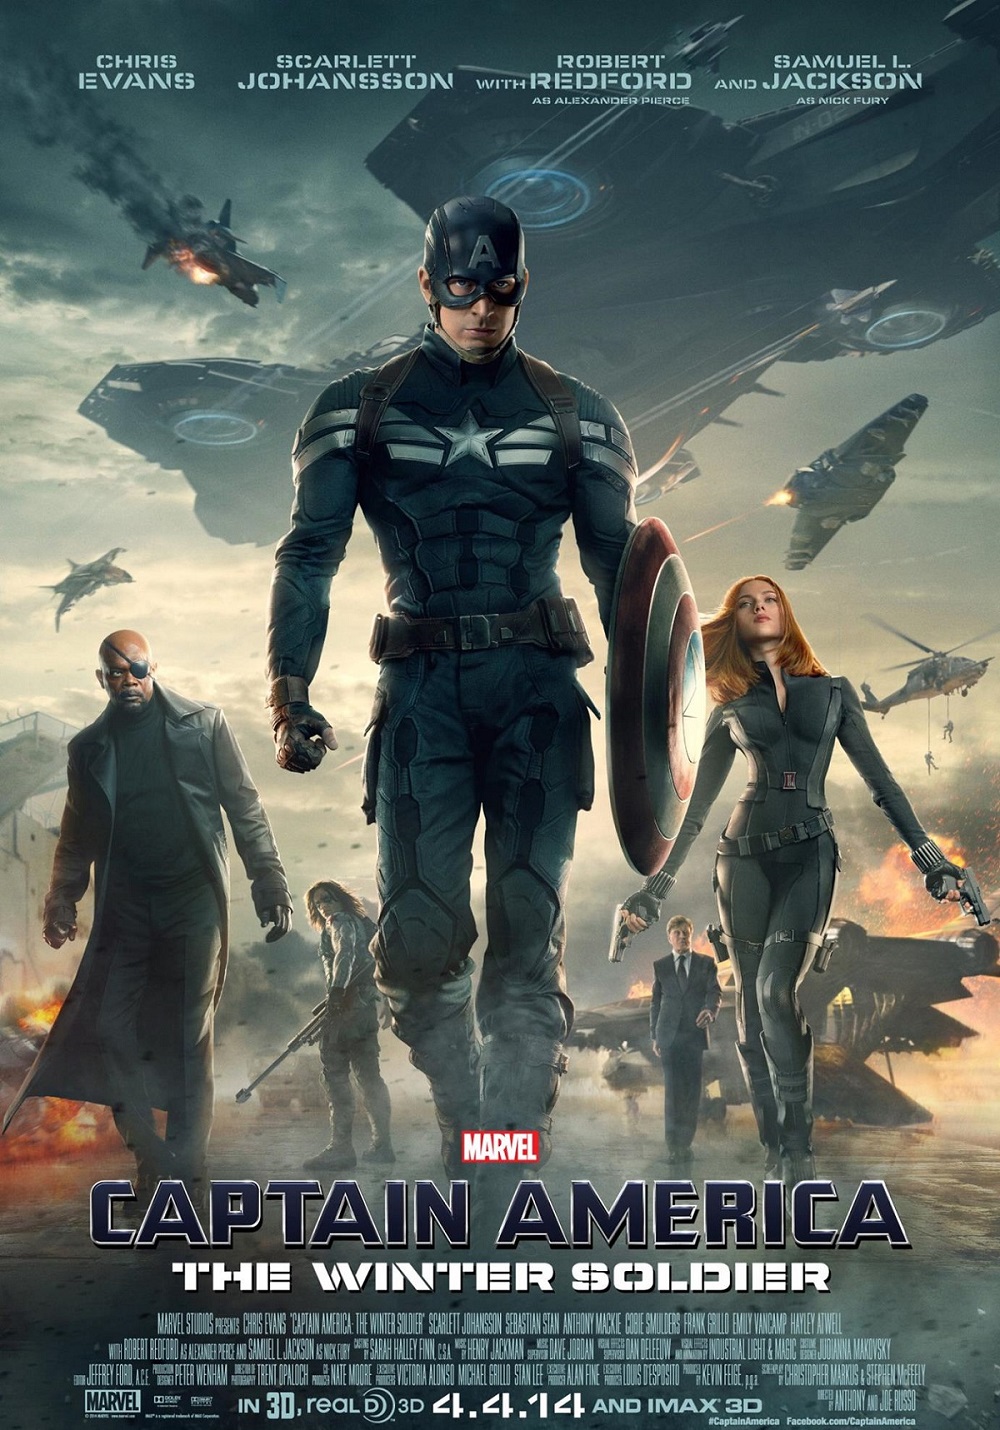 4. The ‘Captain America’ Trilogy / Трилогията „Капитан Америка“ – Критиците са в общо съгласие, към което се числи и моя милост, че именно това безспорно е най-добрата трилогия за соловите приключения на супергерой от вселената на Marvel. Първият филм спечели сърцата на хората с достоверния си исторически вид, вторият катапултира цялостното ниво на Marvel-ските филми в съвсем друго измерение с модерния си политически подтекст и изненадващ шпионски сюжет, а третият зададе нови граници на света, в който се развива, с етичния конфликт между главния герой и Железния човек, спечелен както физически, така и морално, от неотразимия Капитан Америка.